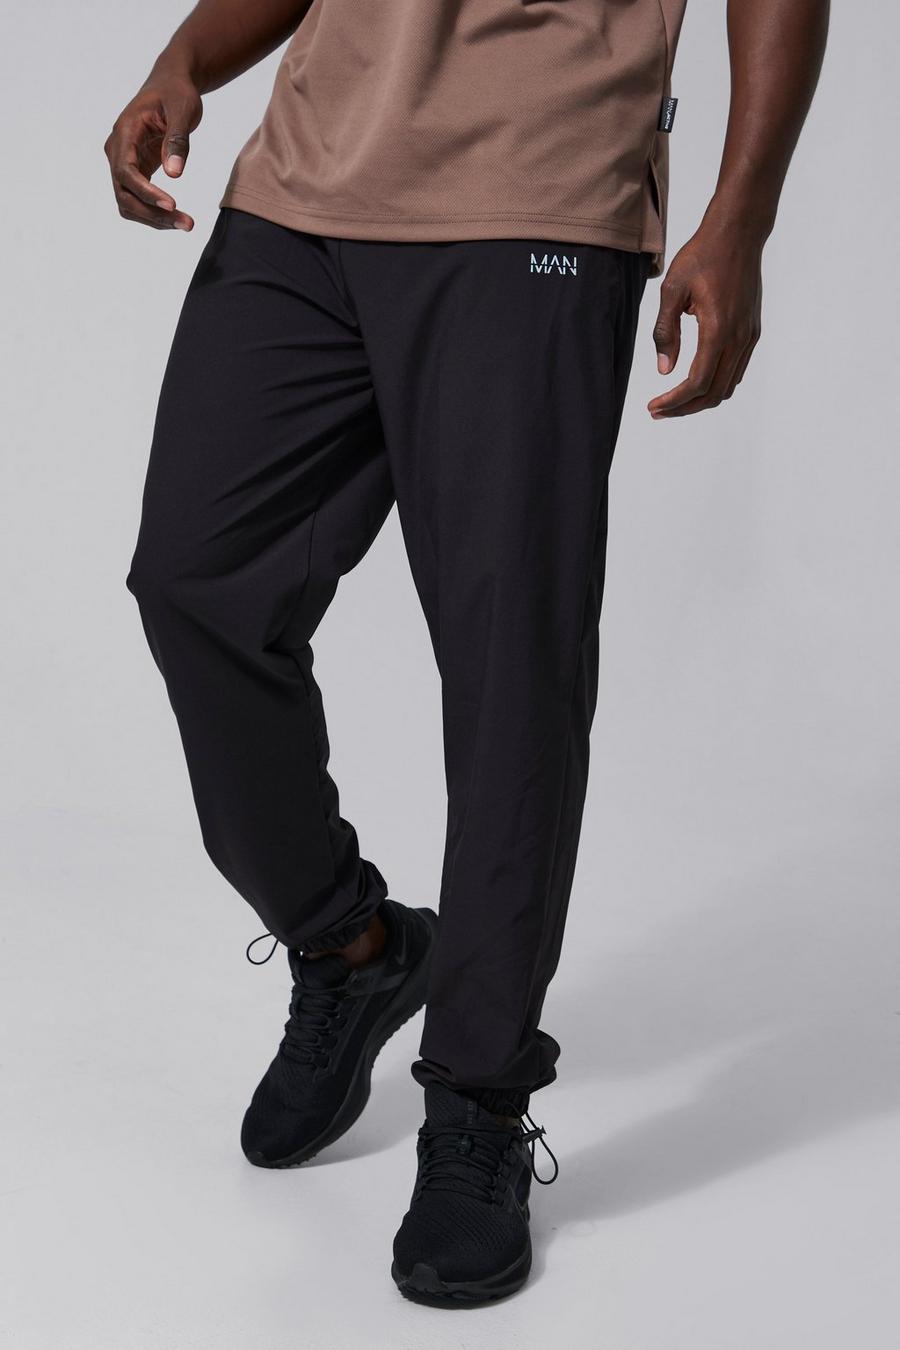 Pantalón deportivo Tall MAN Active con alamar y cordón elástico, Black negro